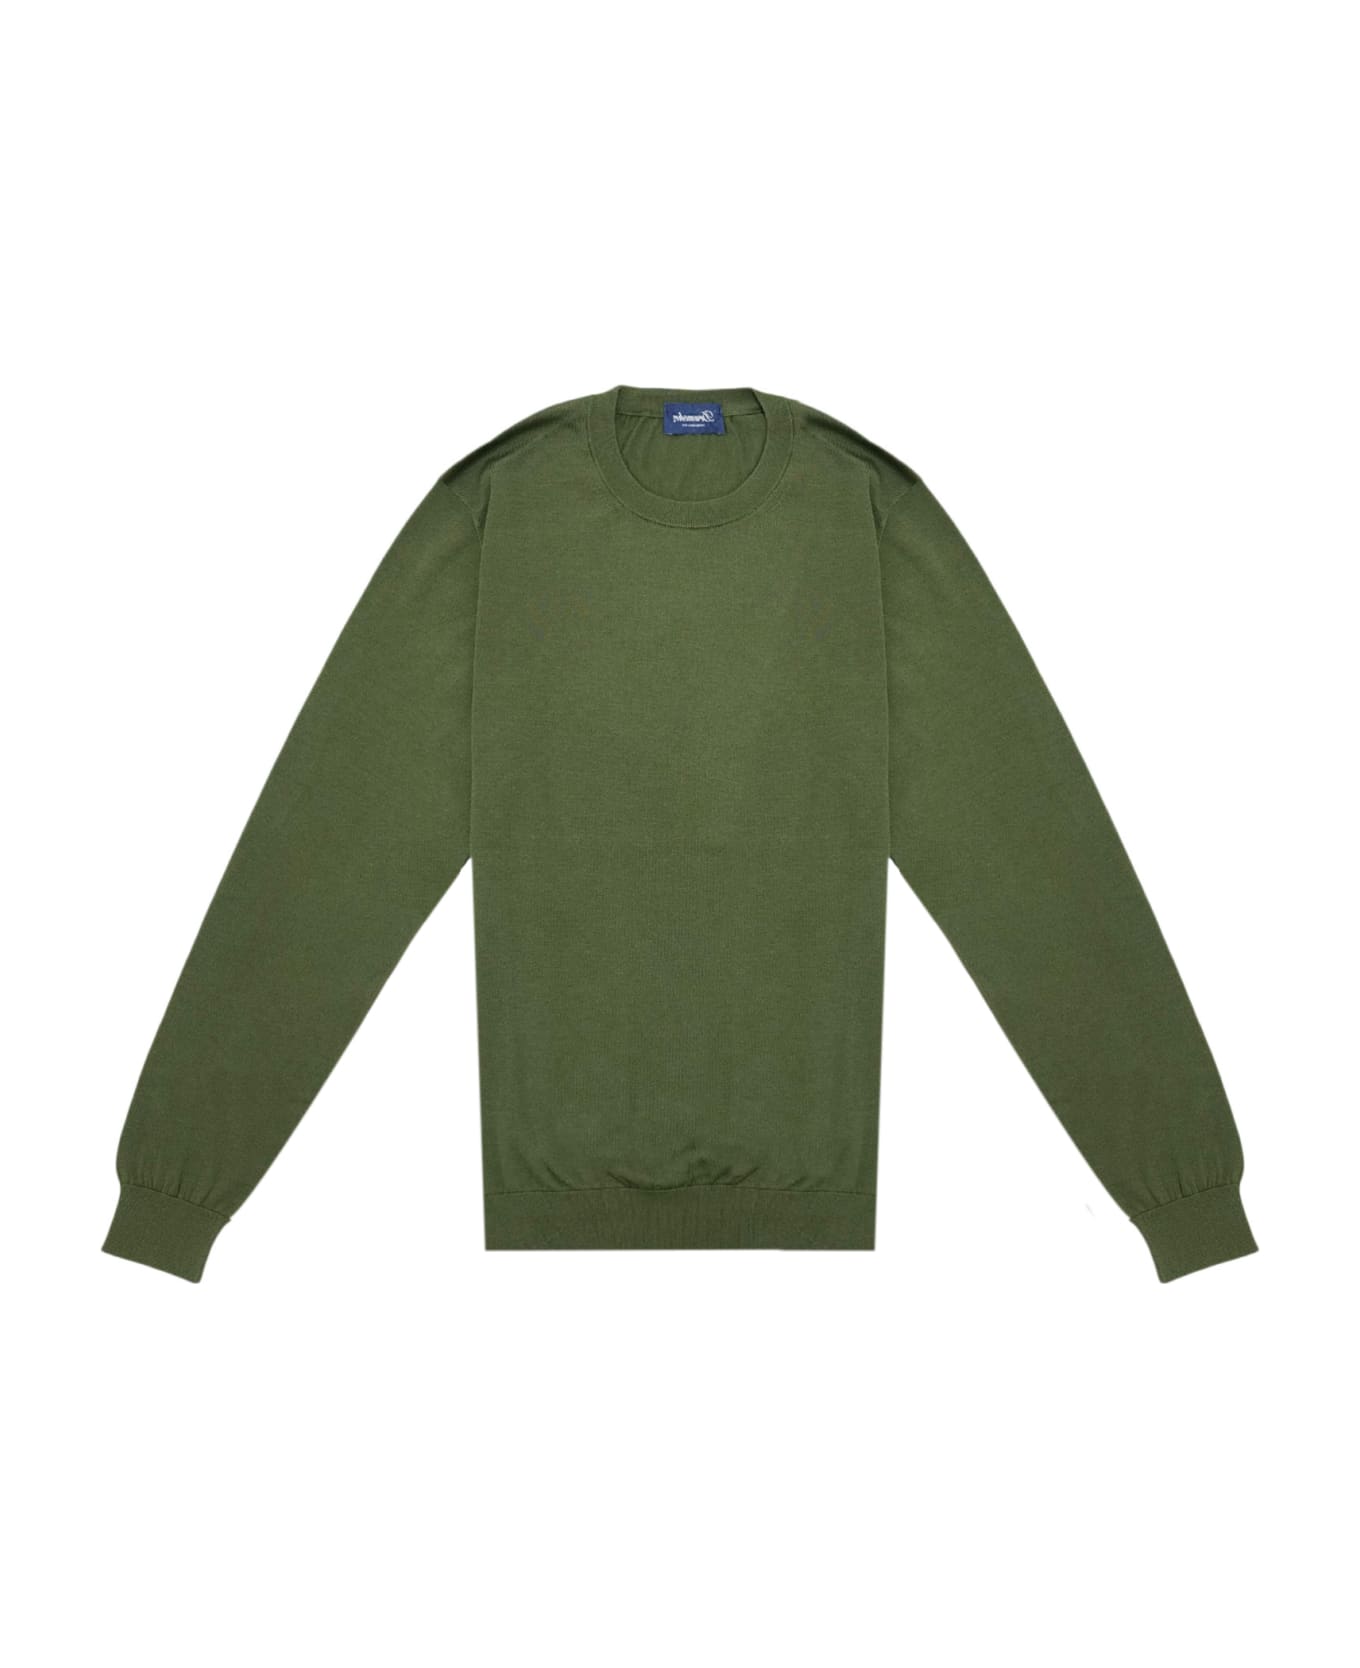 Drumohr Sweater - Green